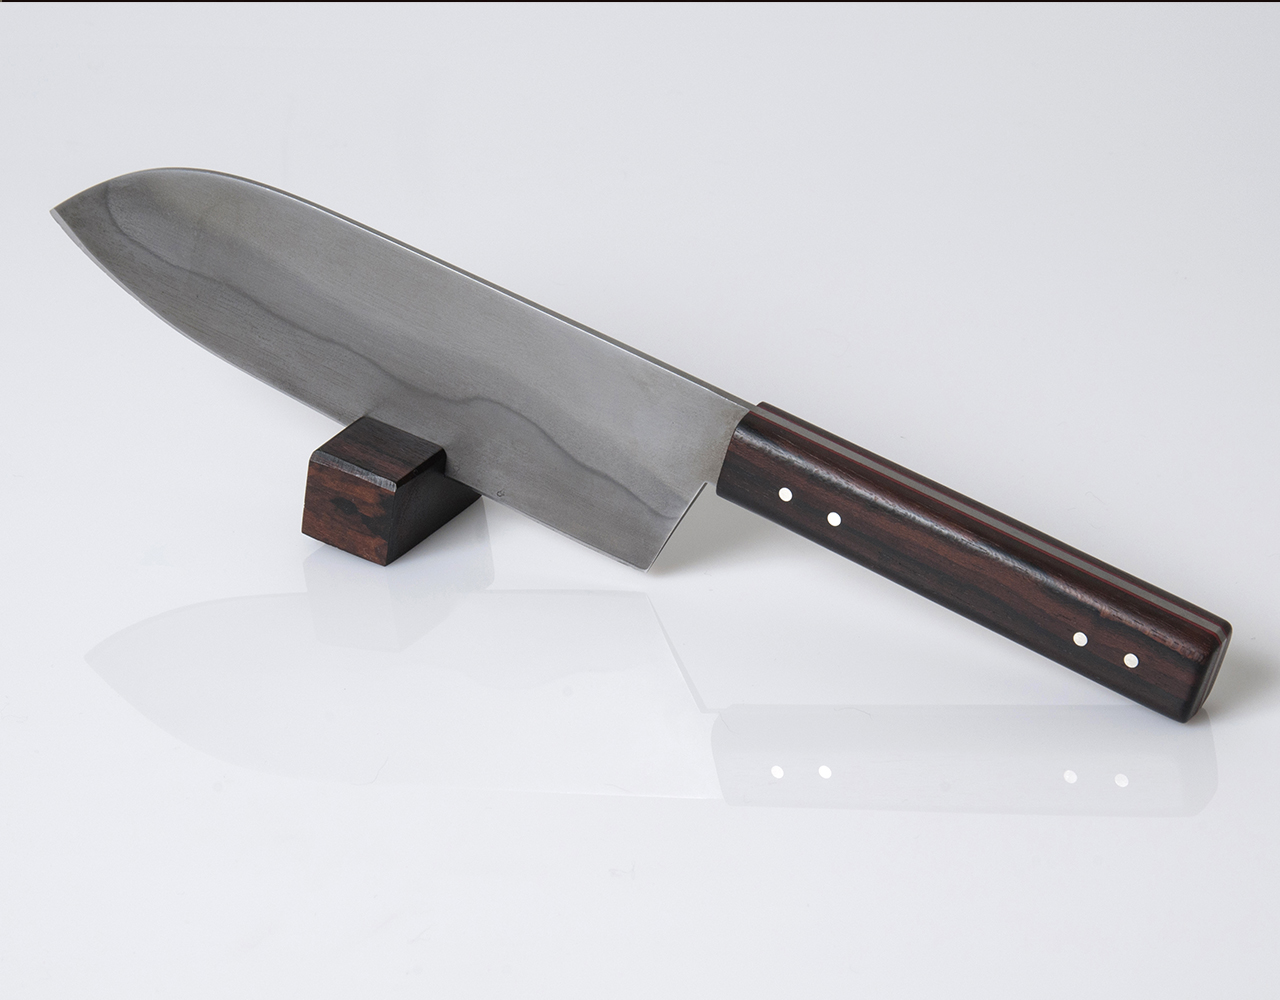 PHOTO: ©BCEE - Flavie Hengen
Model One, 2015, Couteau de cuisine, Lame C100 (1,1274)
en acier au carbone,poignée en bois de palissandre et acier inoxydable,
L 29,5 x P 5 cm, pièce unique